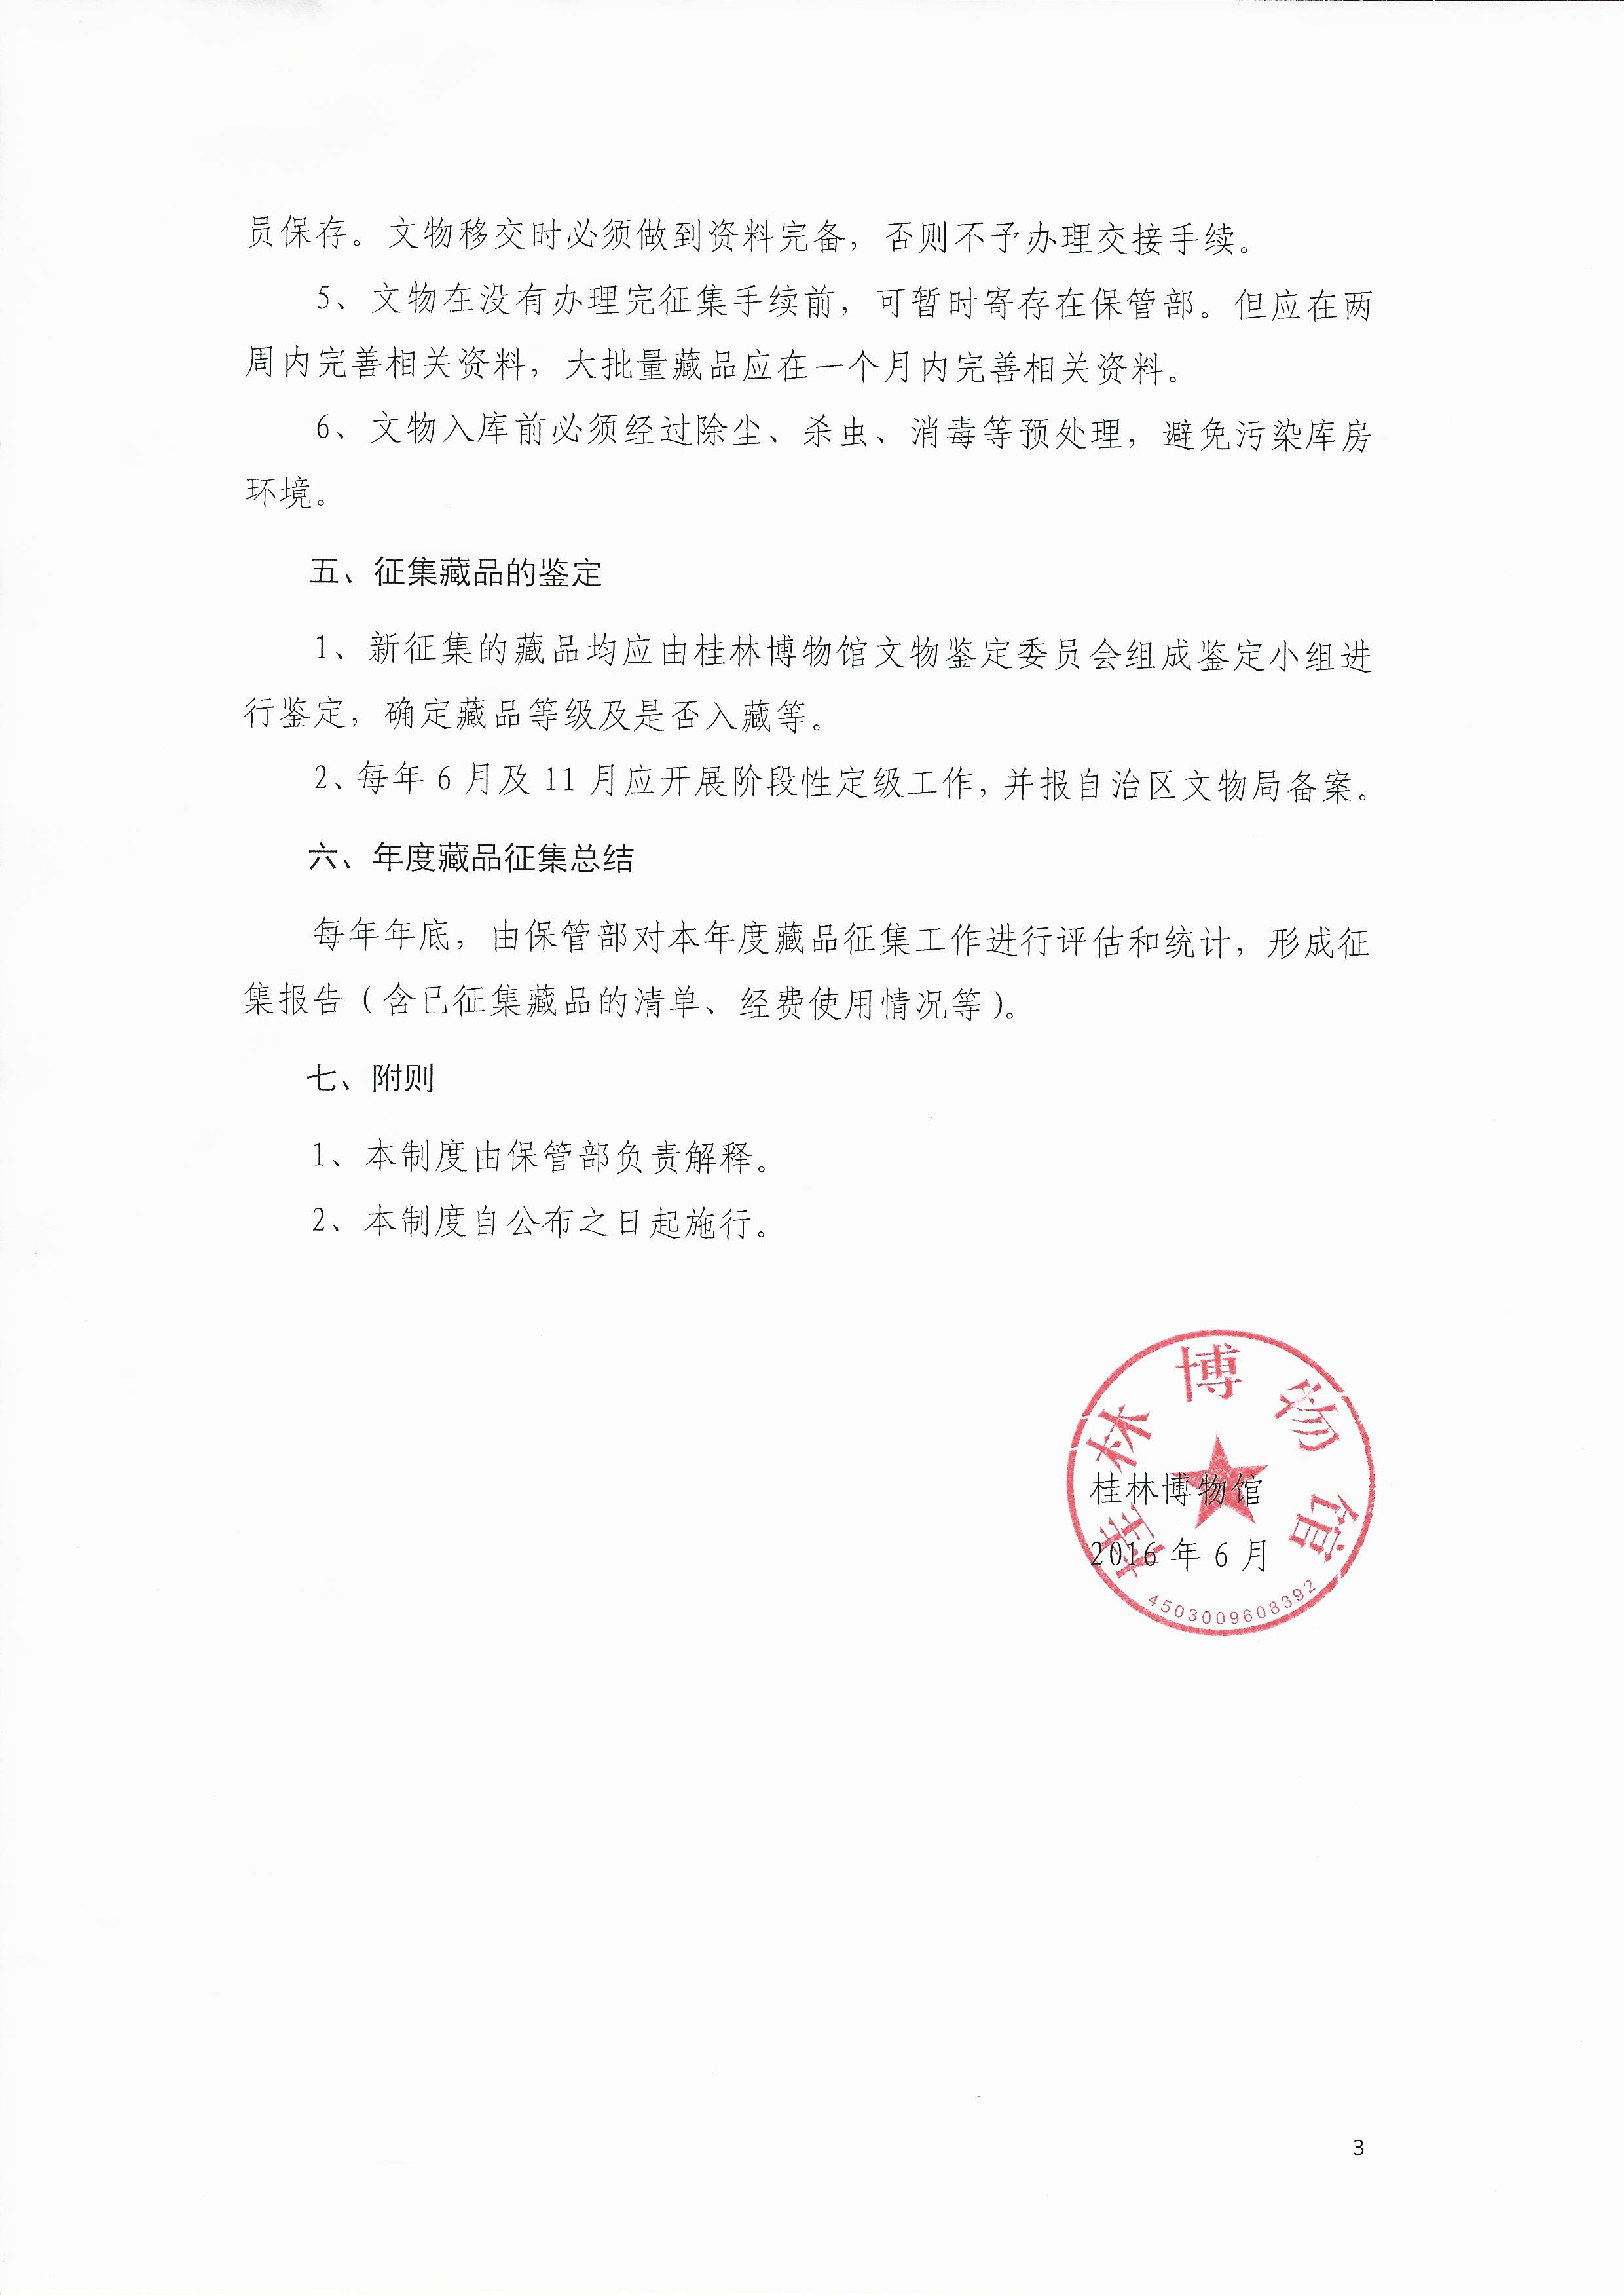 2004-1 桂林博物馆藏品征集管理办法 2016（第1号）文 2016.6已打印 (3).jpg